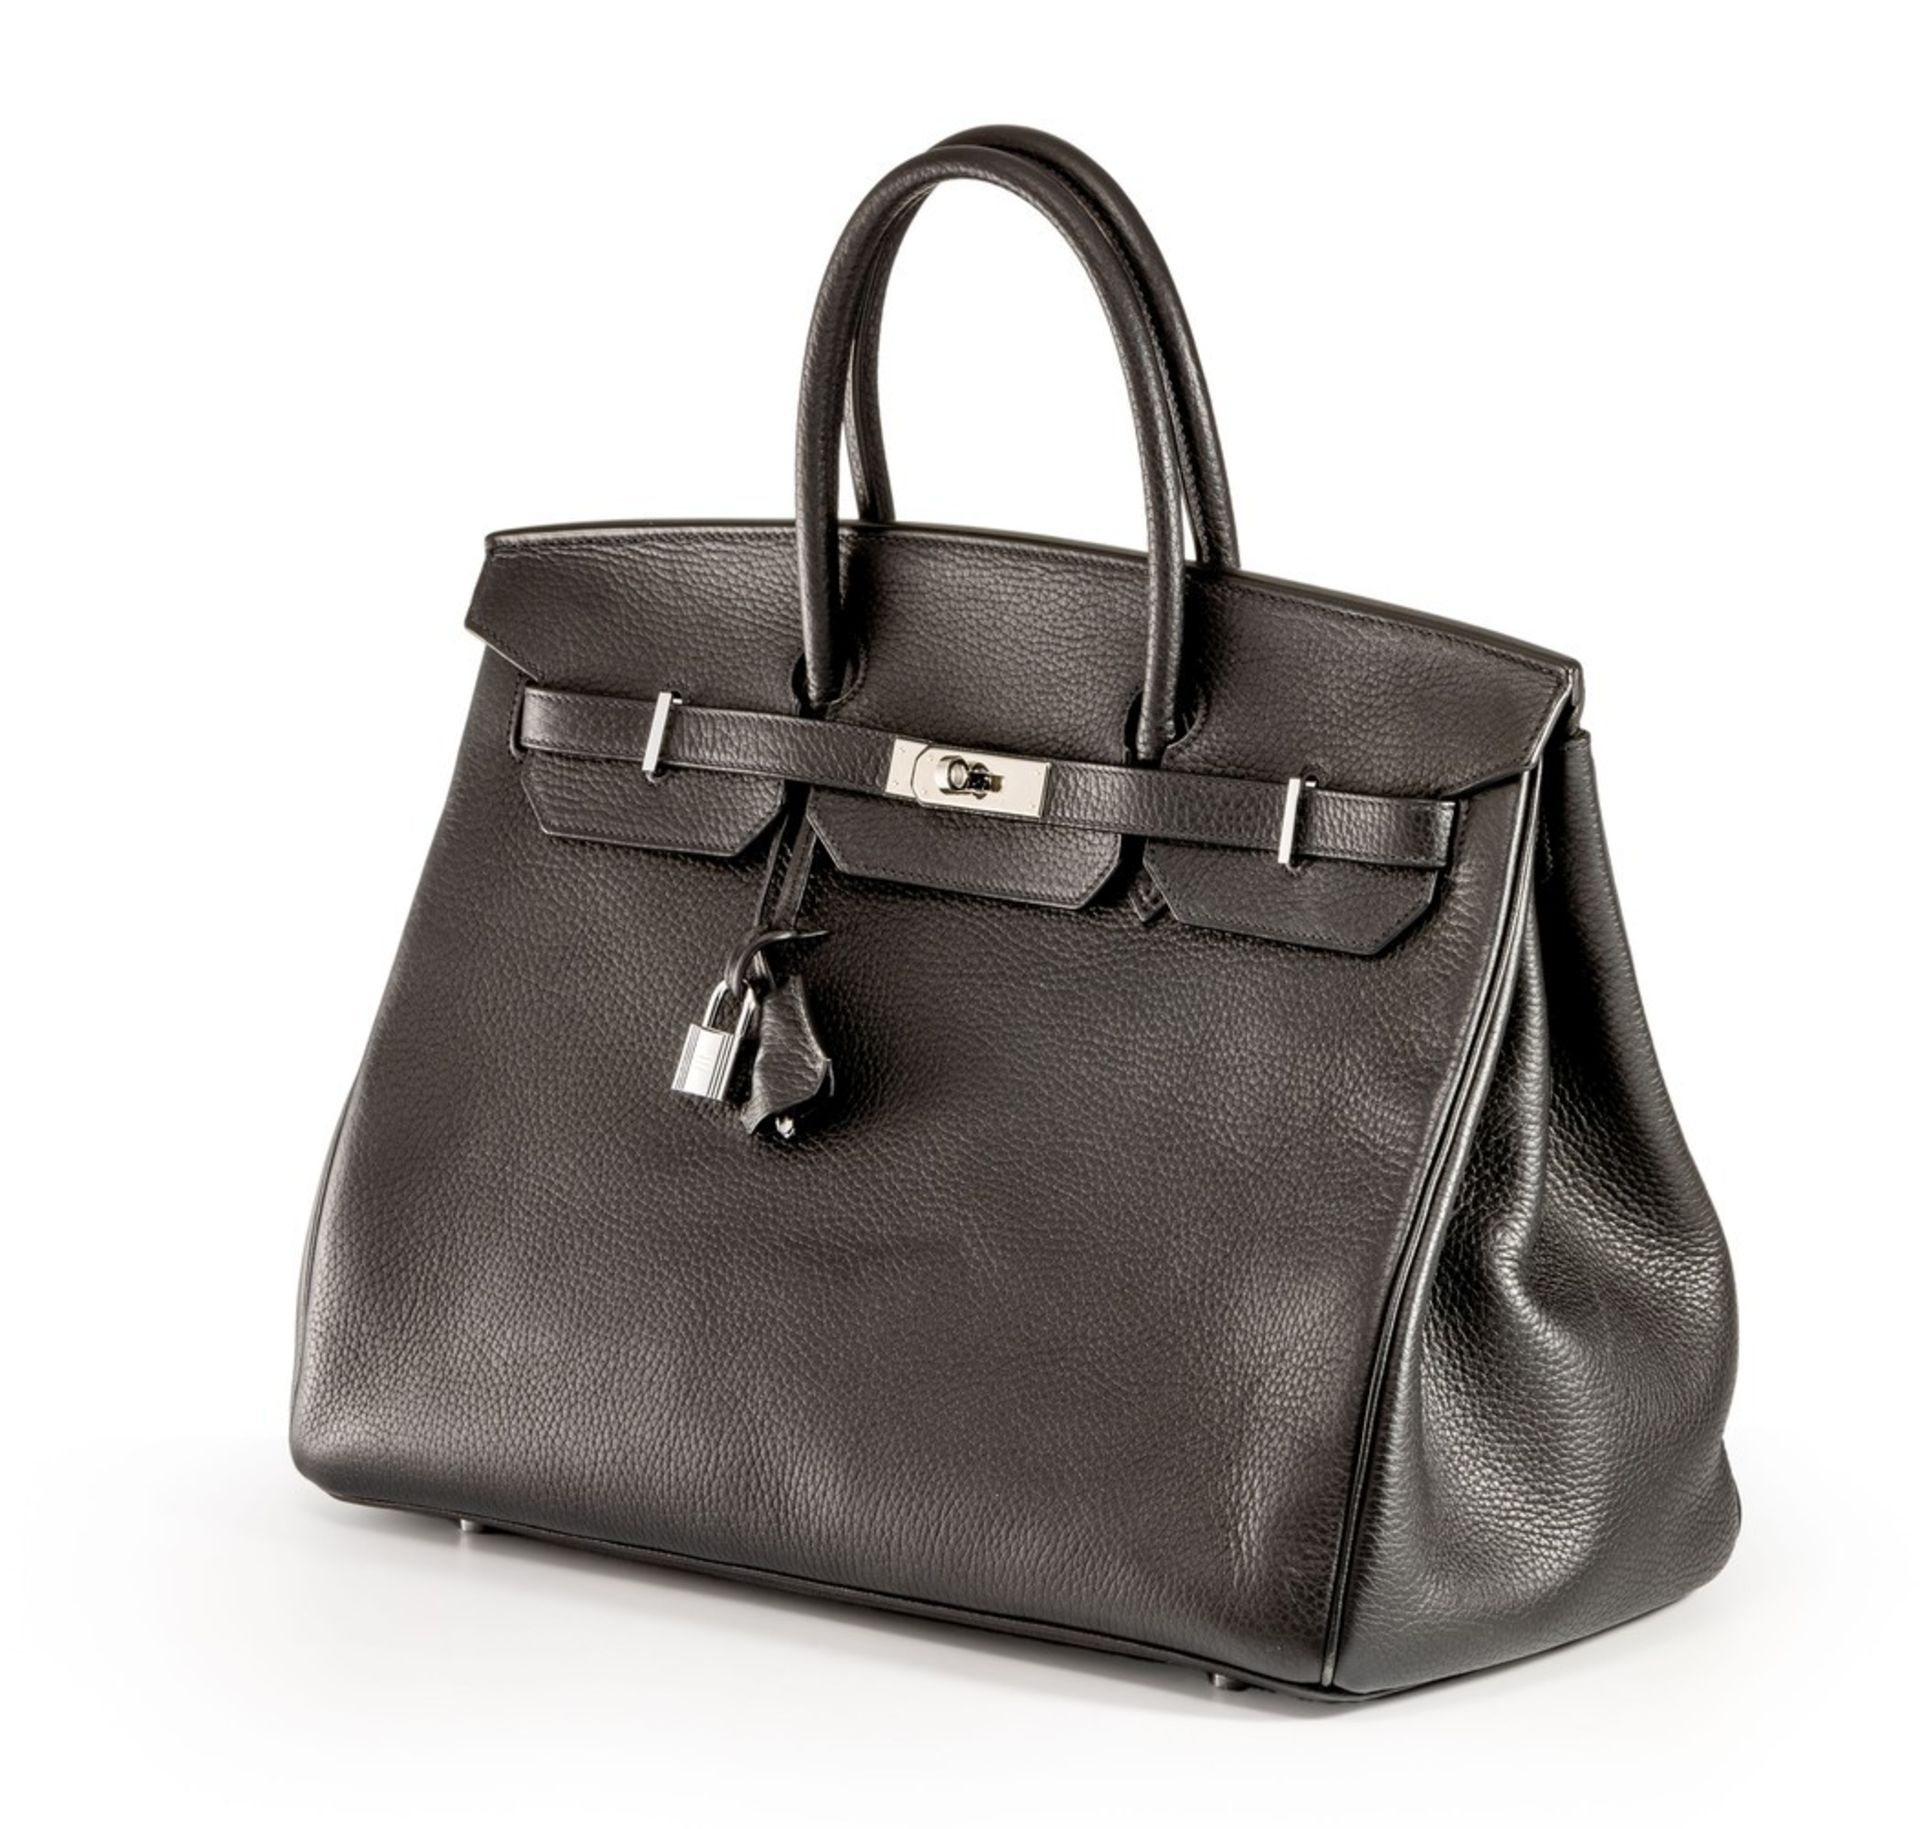 Damenhandtasche "Birkin Bag" von Hermès, Paris